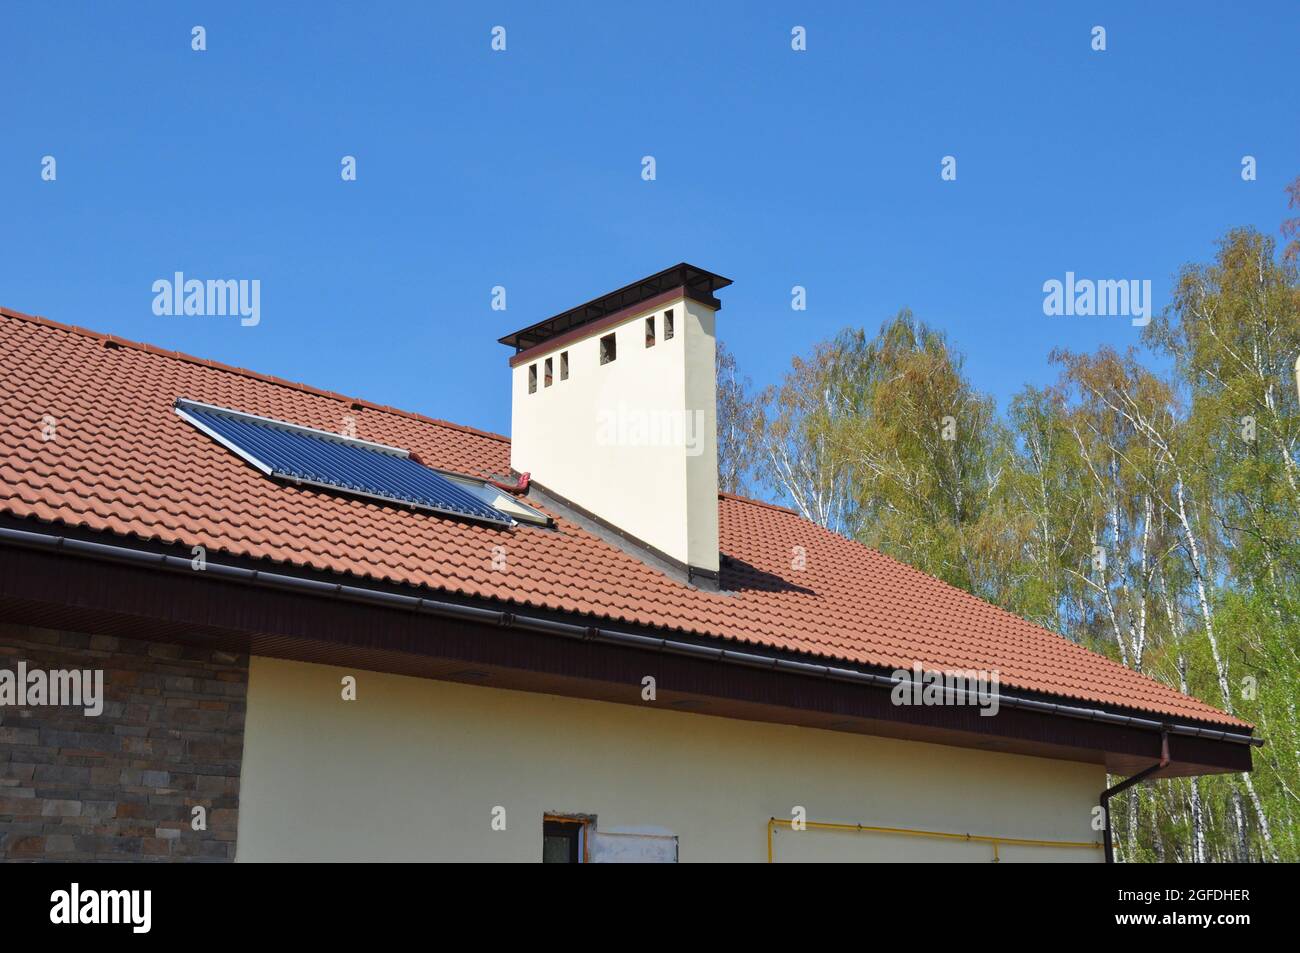 Eine Nahaufnahme des Lehmdachs eines energieeffizienten Einfamilienhauses mit solarem Warmwasserheizpanel, einem Dachfenster, einem Kamin und einer Regenrinne Stockfoto